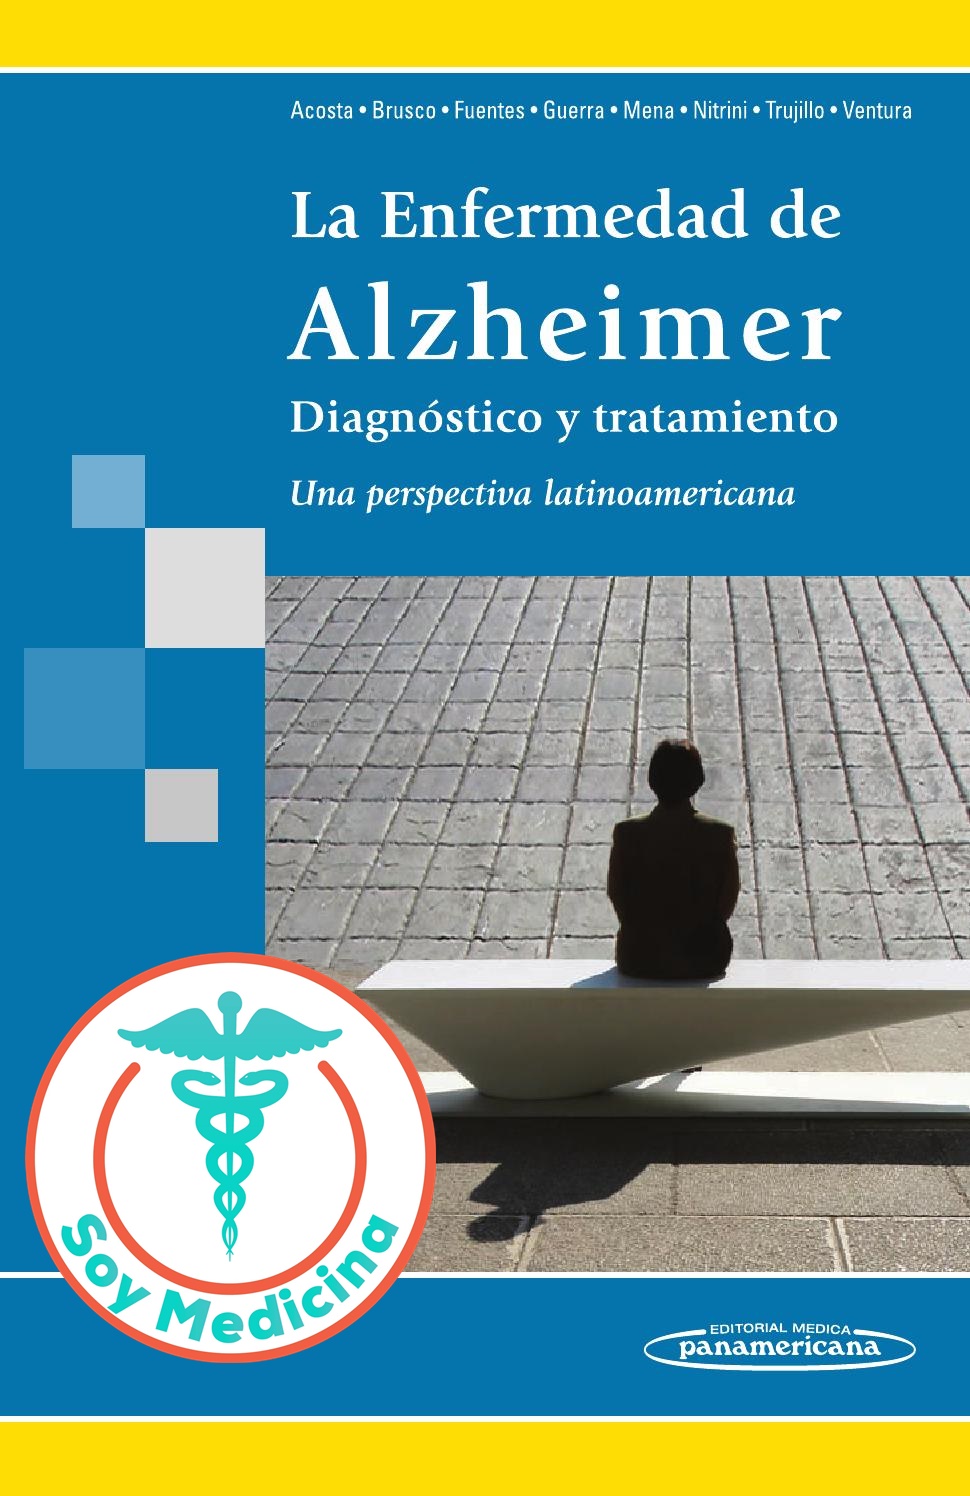 La Enfermedad de Alzheimer Diagnostico y Tratamiento